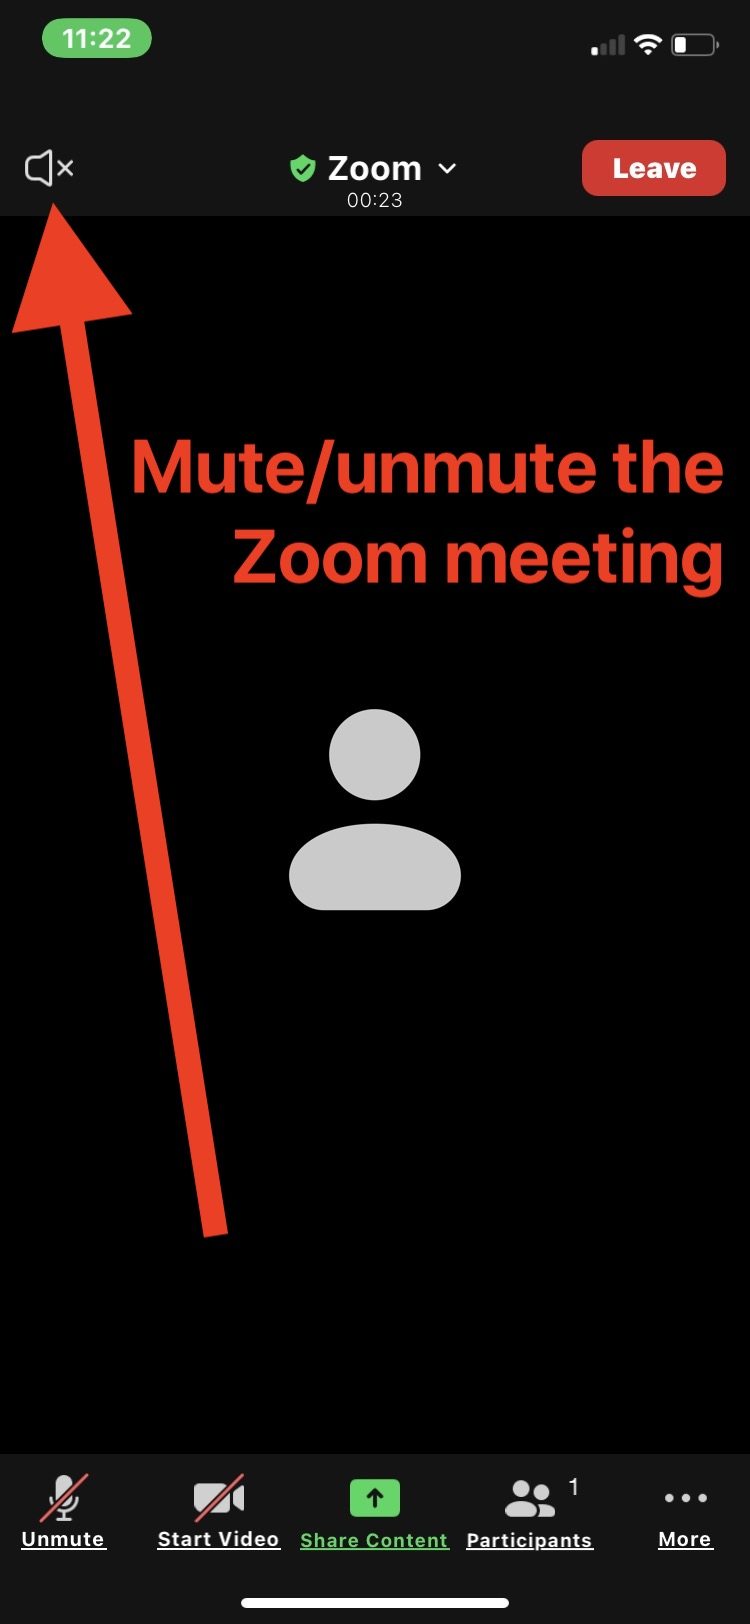 在 iPhone 上将整个 Zoom 会议静音或取消静音